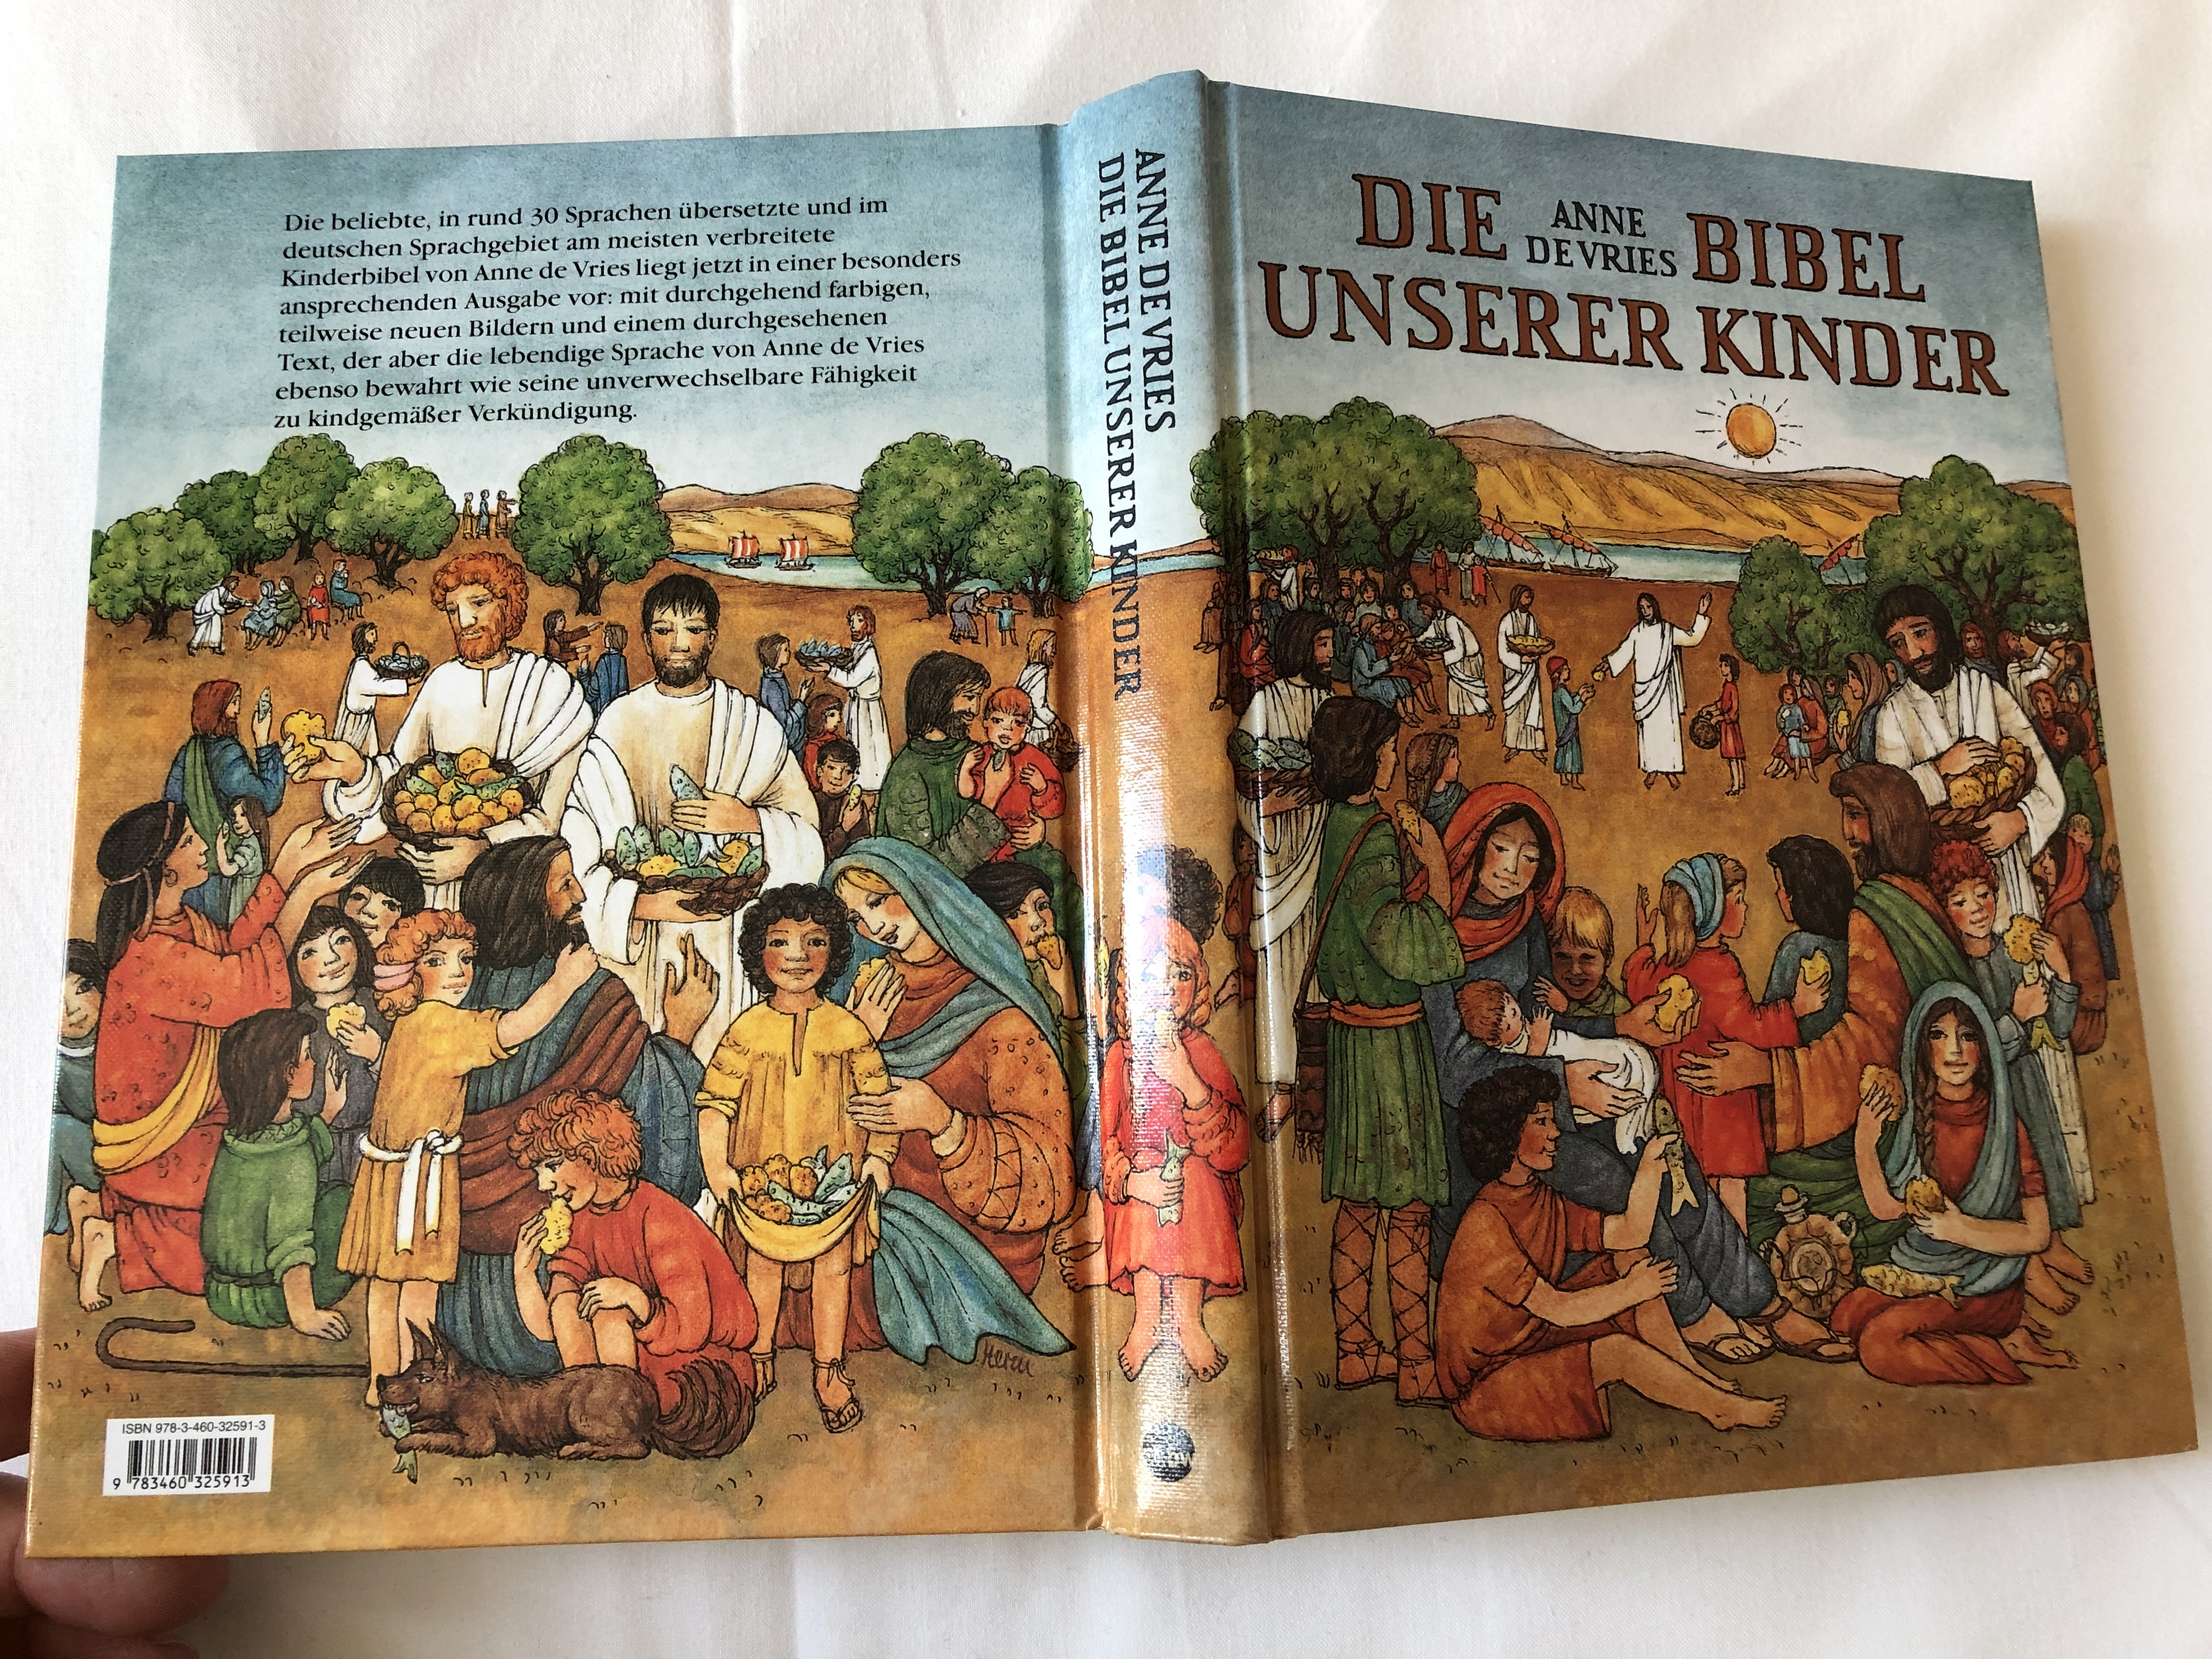 die-bibel-unserer-kinder-by-anne-de-vries-the-bible-of-our-children-german-translation-of-kleutervertelboek-voor-de-bijbelse-geschiedenis-hardcover-kbw-18-.jpg